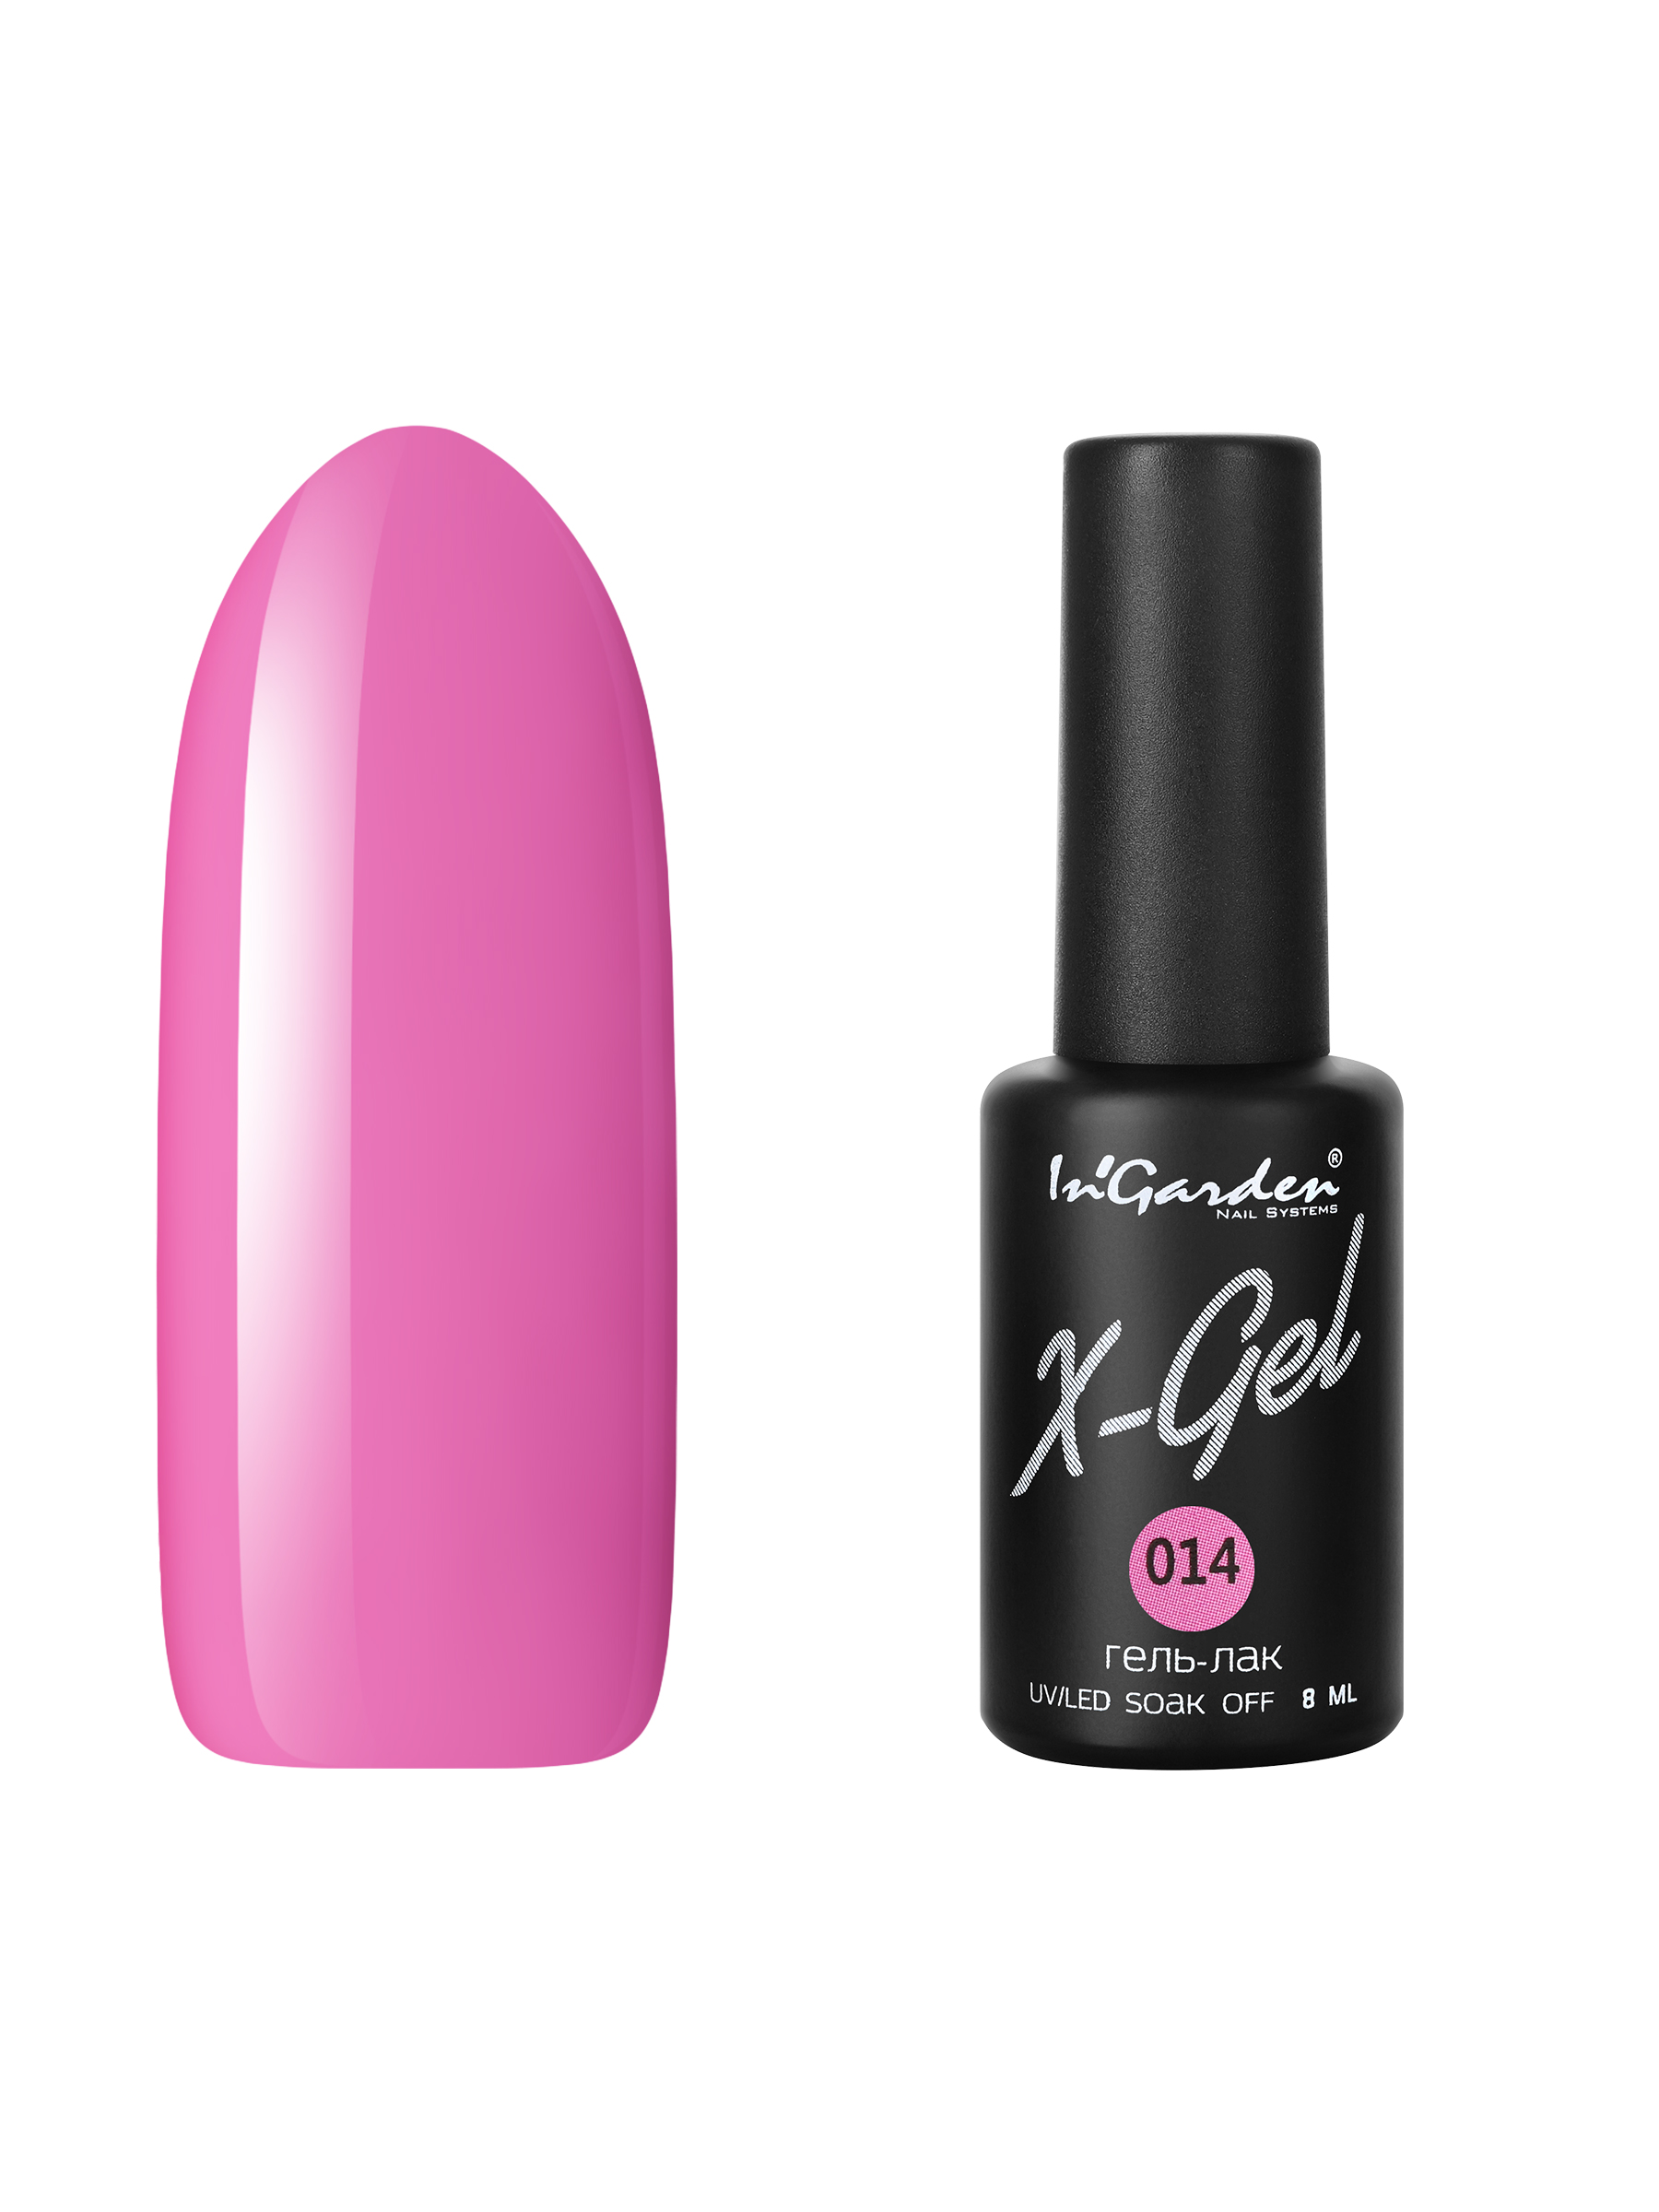 Купить Гель лак для ногтей In’Garden X-Gel N° 14 вишнево-розовый плотный 8 мл, In'Garden